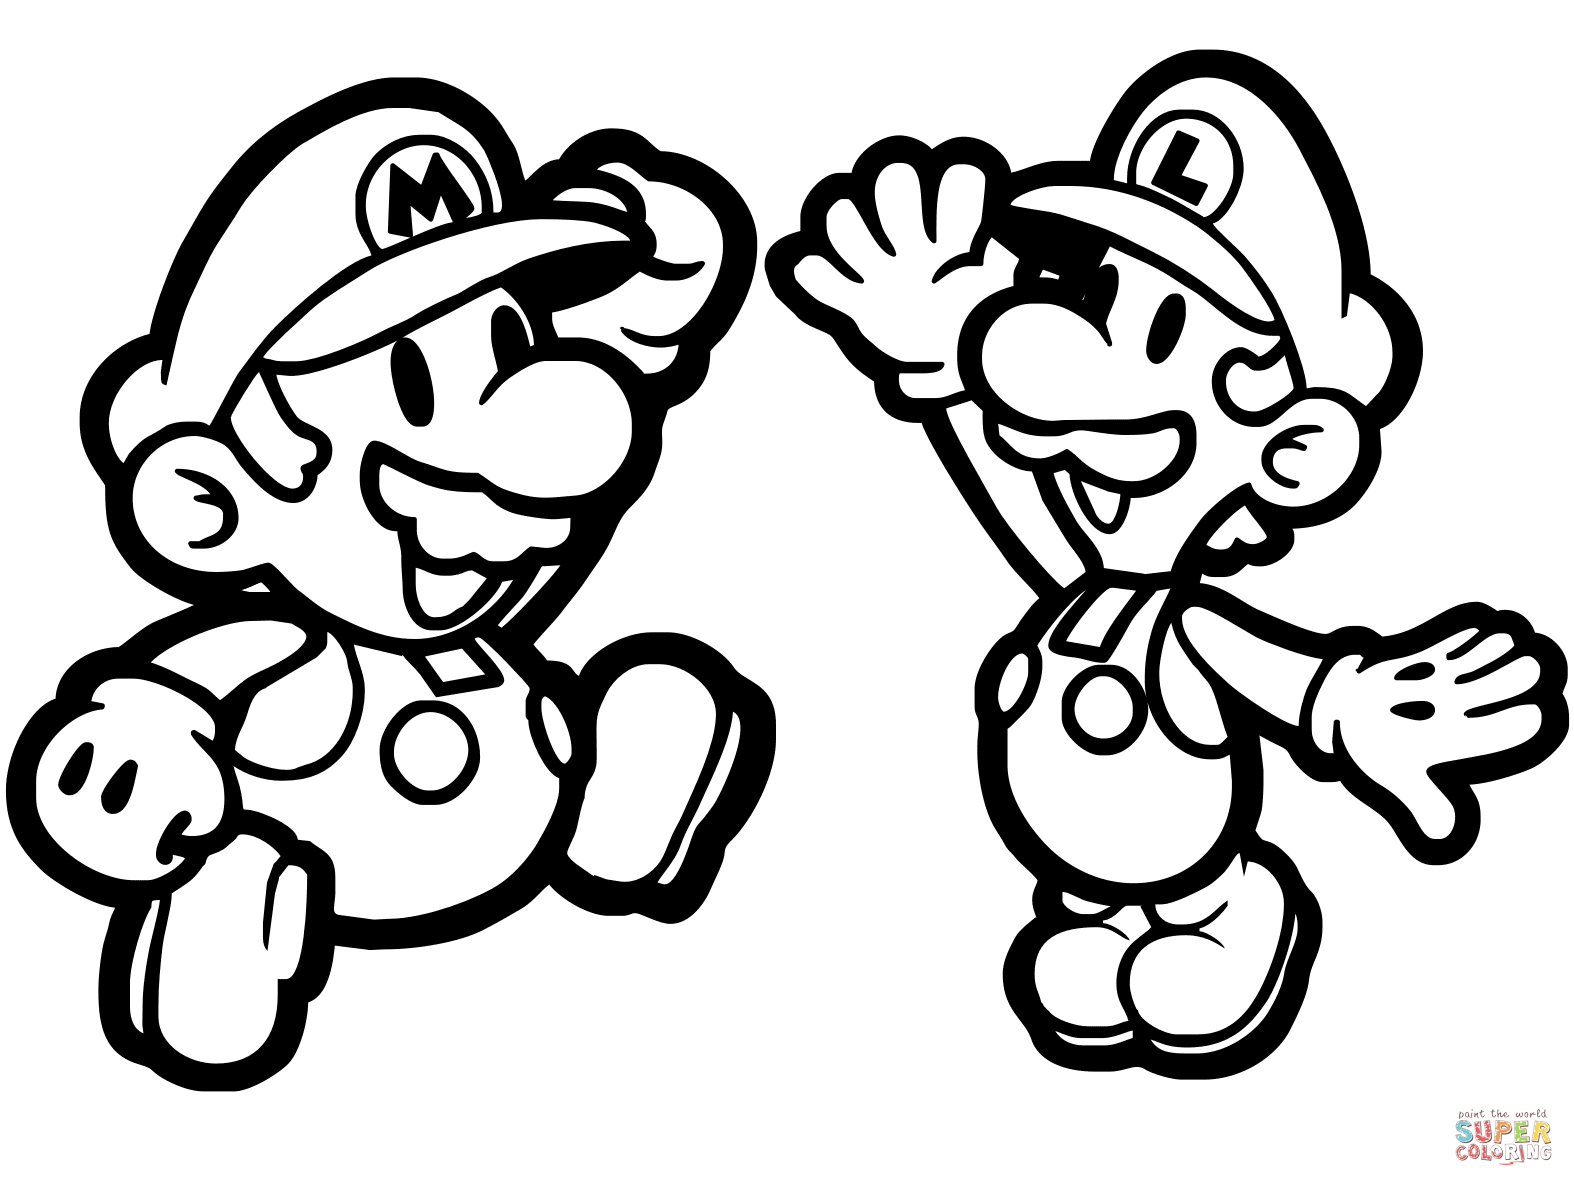 Paper Mario #16